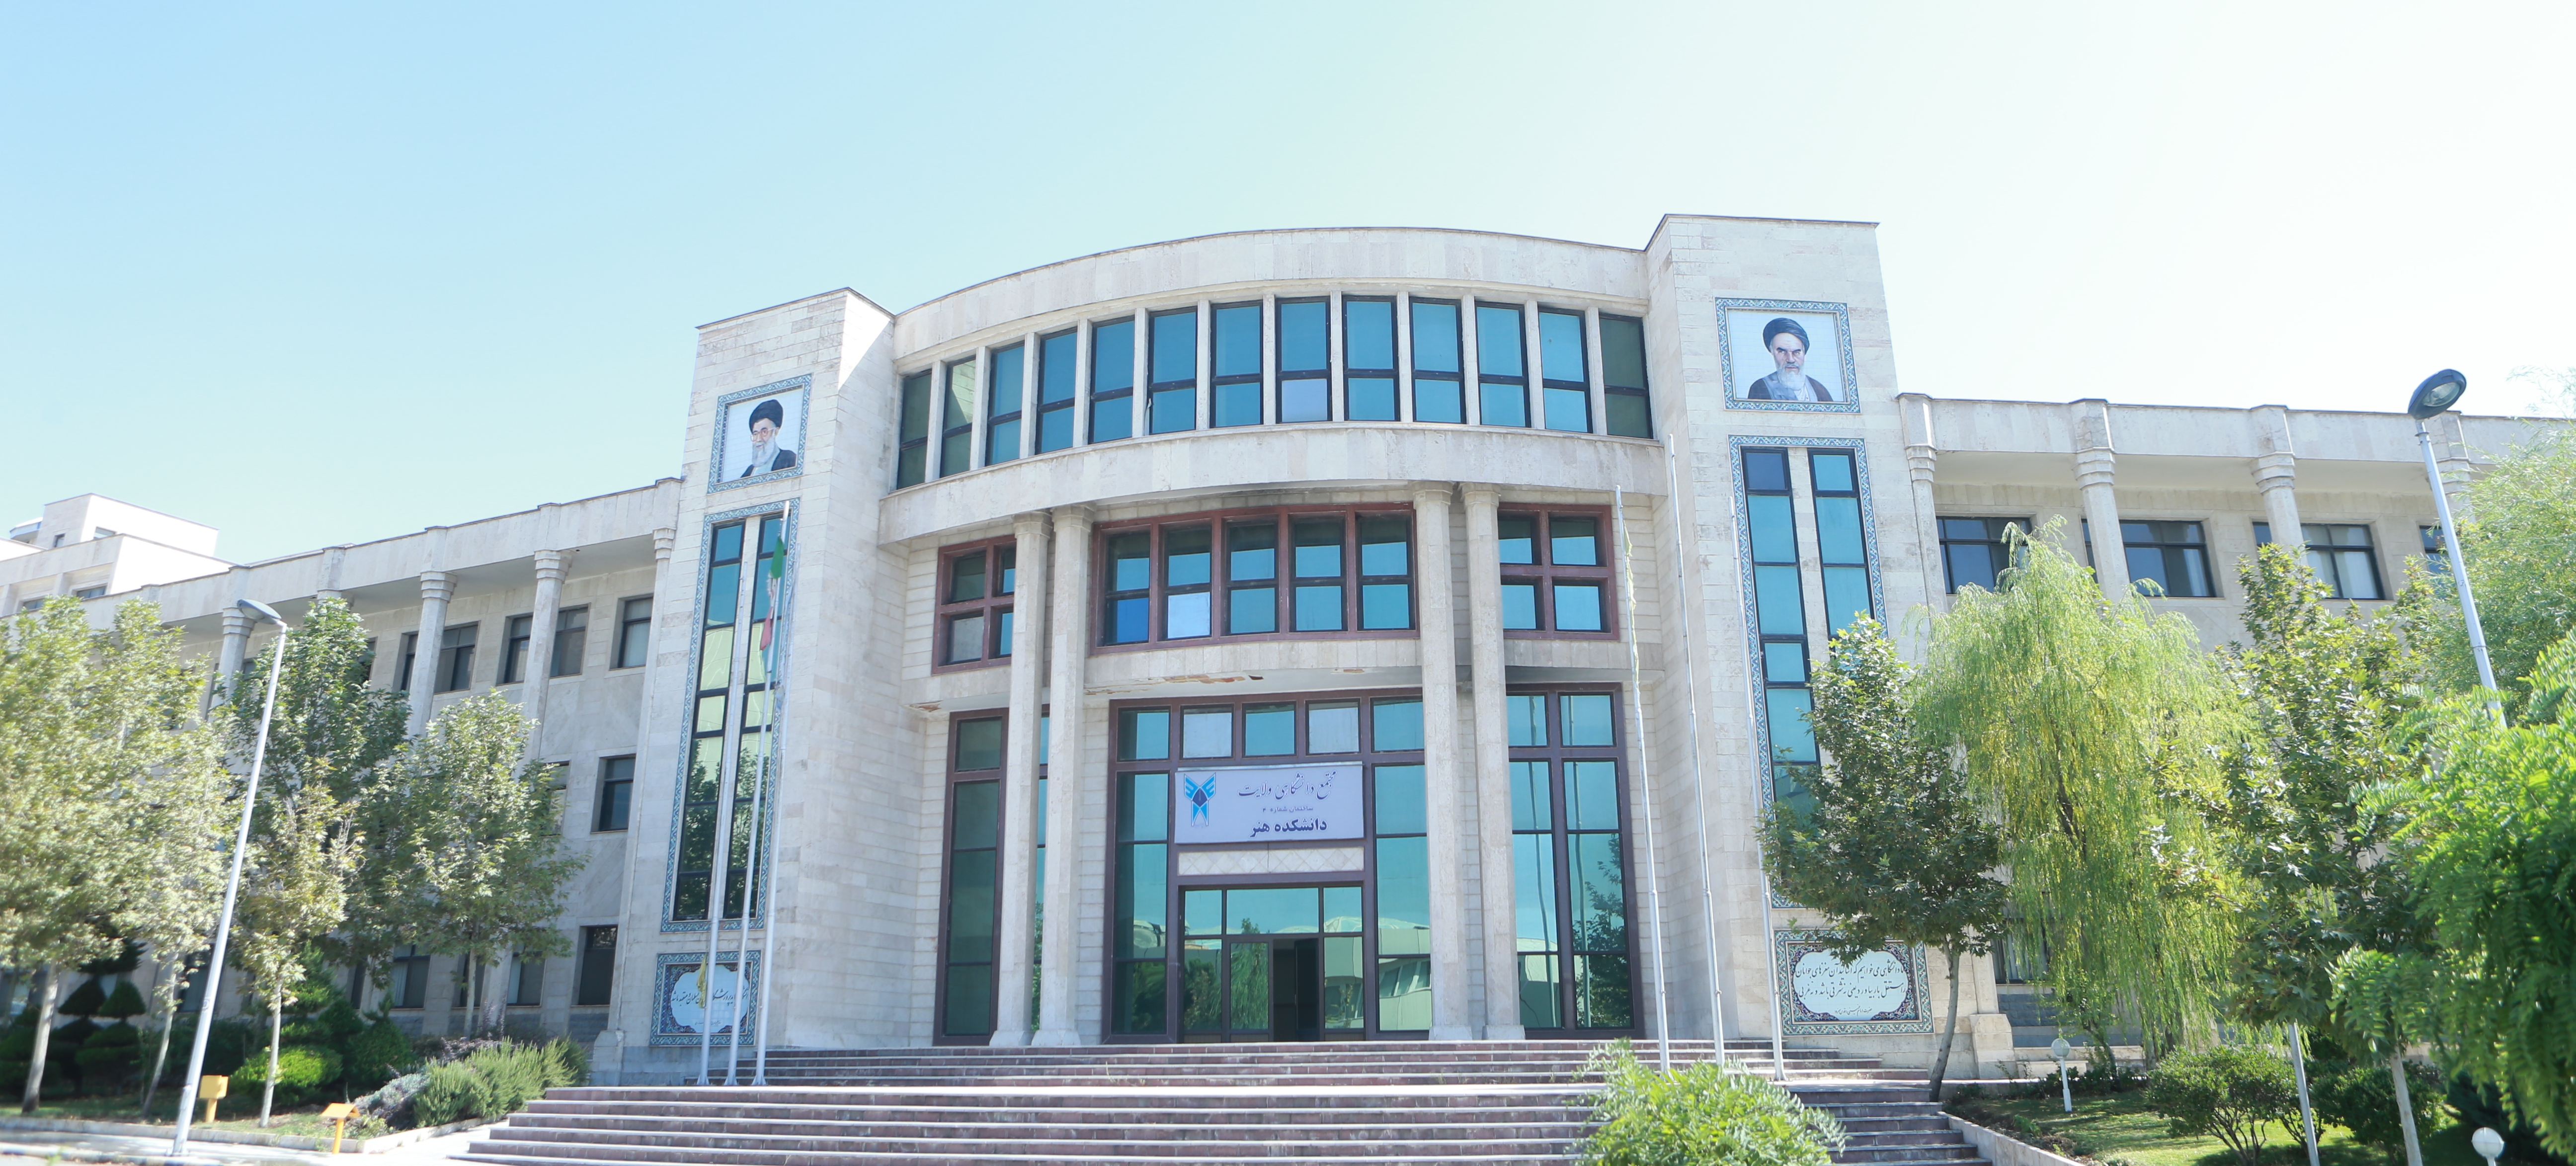 دانشگاه آزاد تهران مرکز دانشکده روانشناسی
